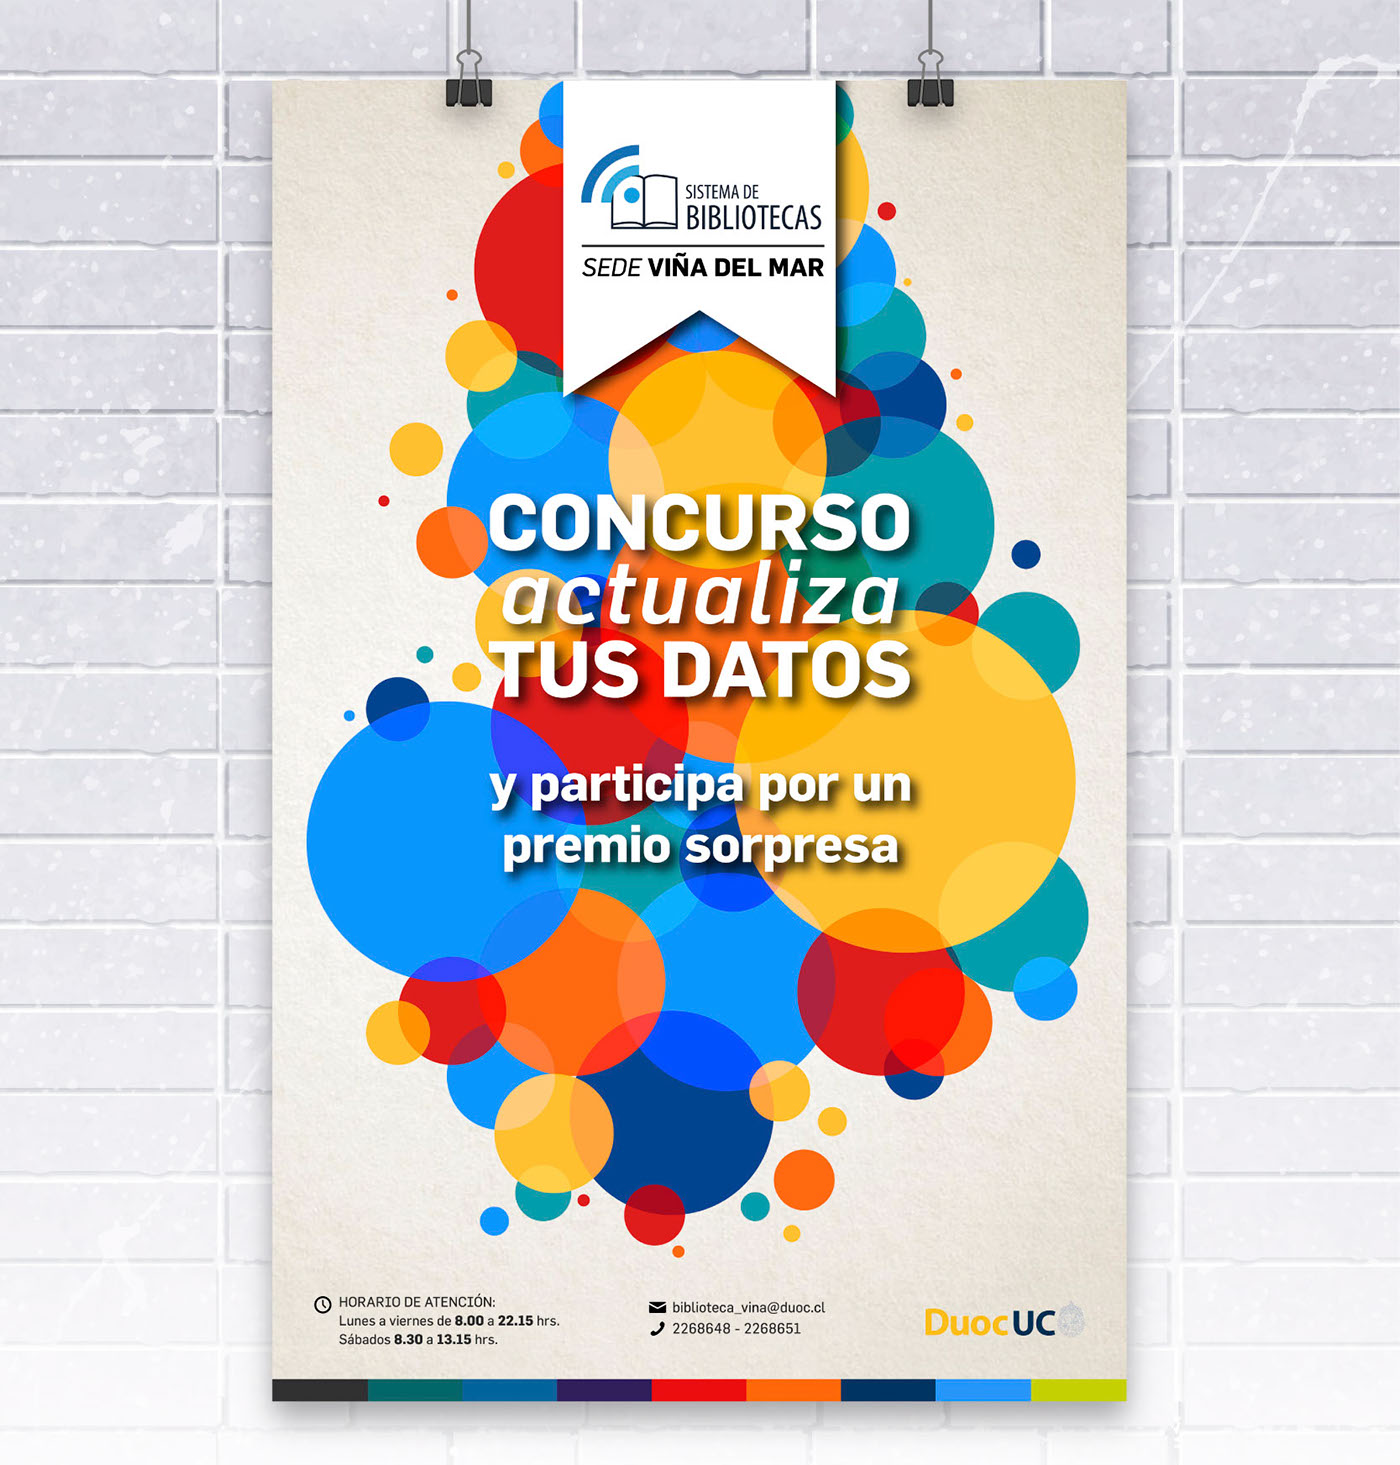 posters semana por escuelas DuocUC santiago chile patrones geométricos geometric patterns diseño salud comunicación biblioteca duocuc Poster Mockup